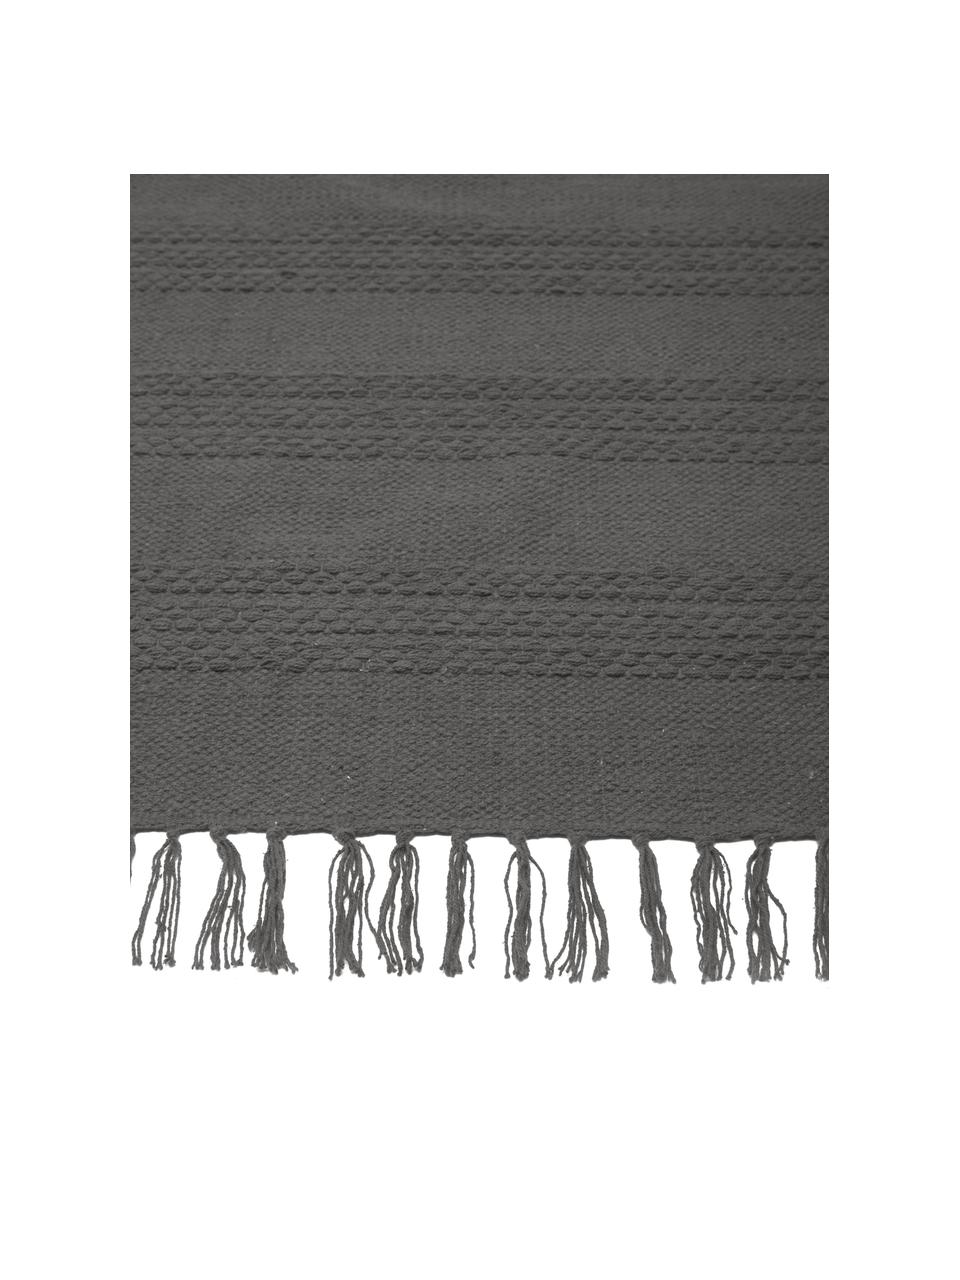 Baumwollteppich Tanya mit Ton-in-Ton-Webstreifenstruktur und Fransenabschluss, 100% Baumwolle, Dunkelgrau, B 200 x L 300 cm (Größe L)